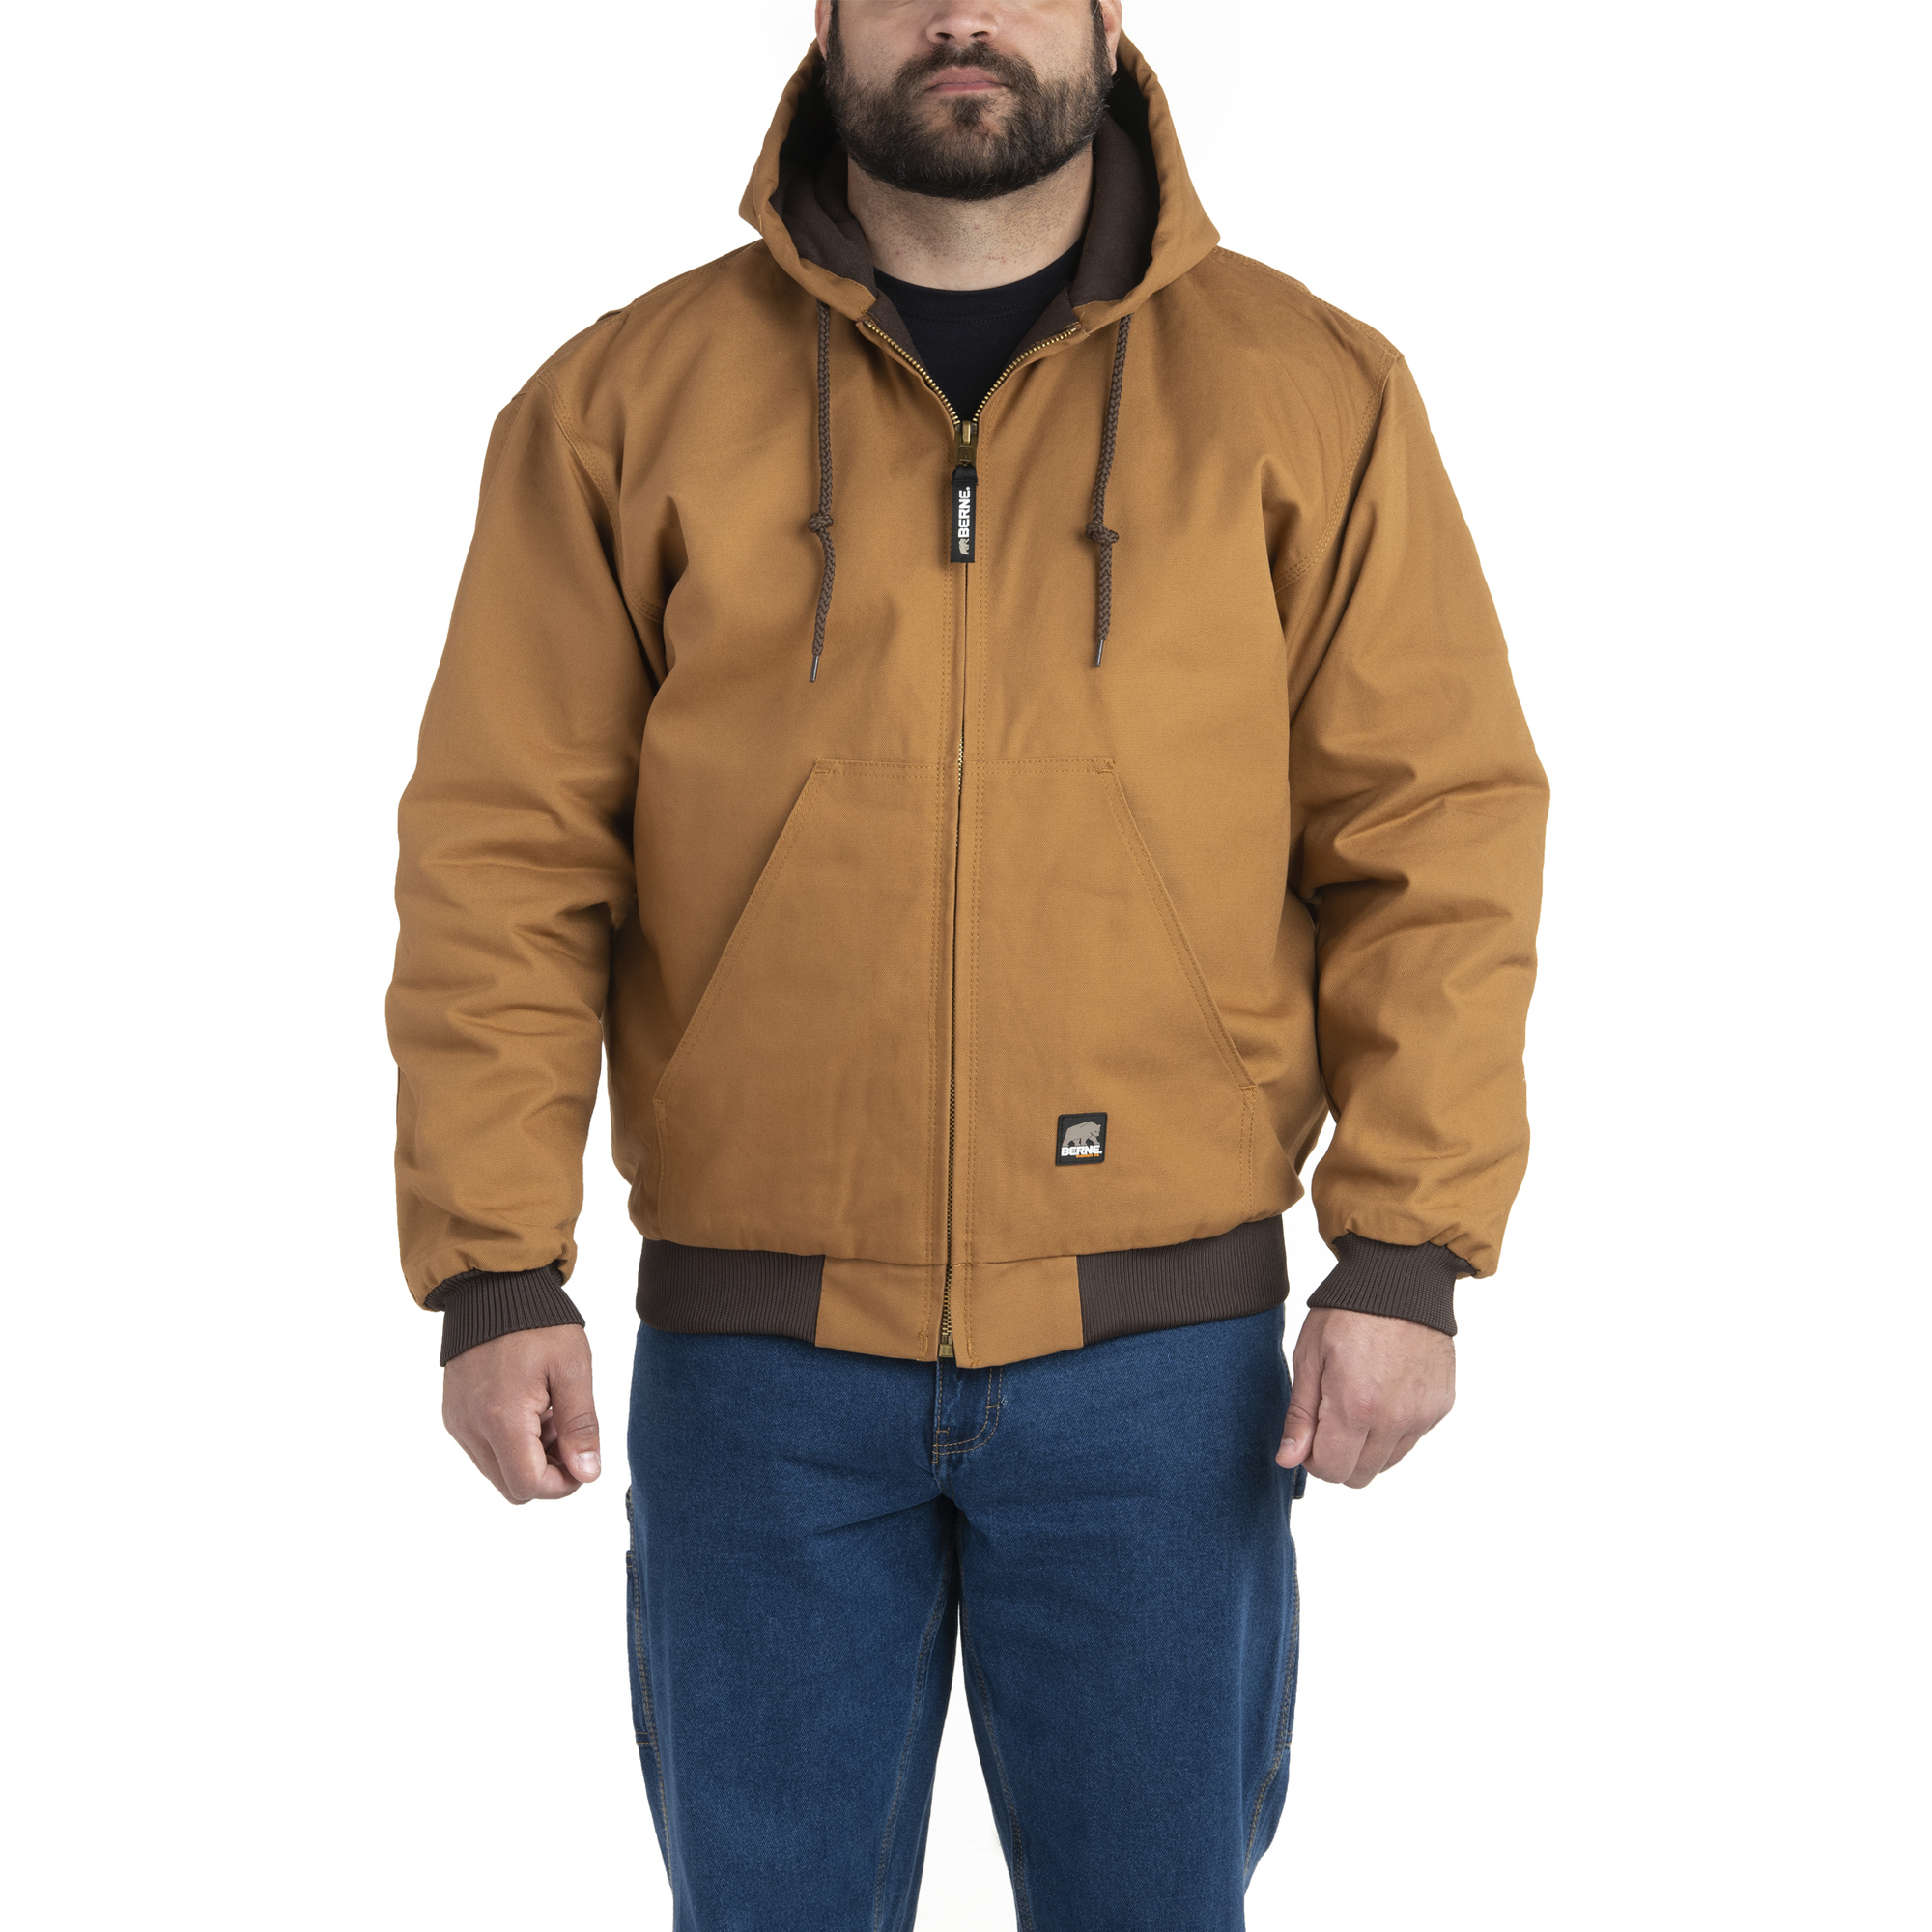 Berne Apparel, Heritage Hooded Jacket, Size S, Color Brown Duck, Model HJ51